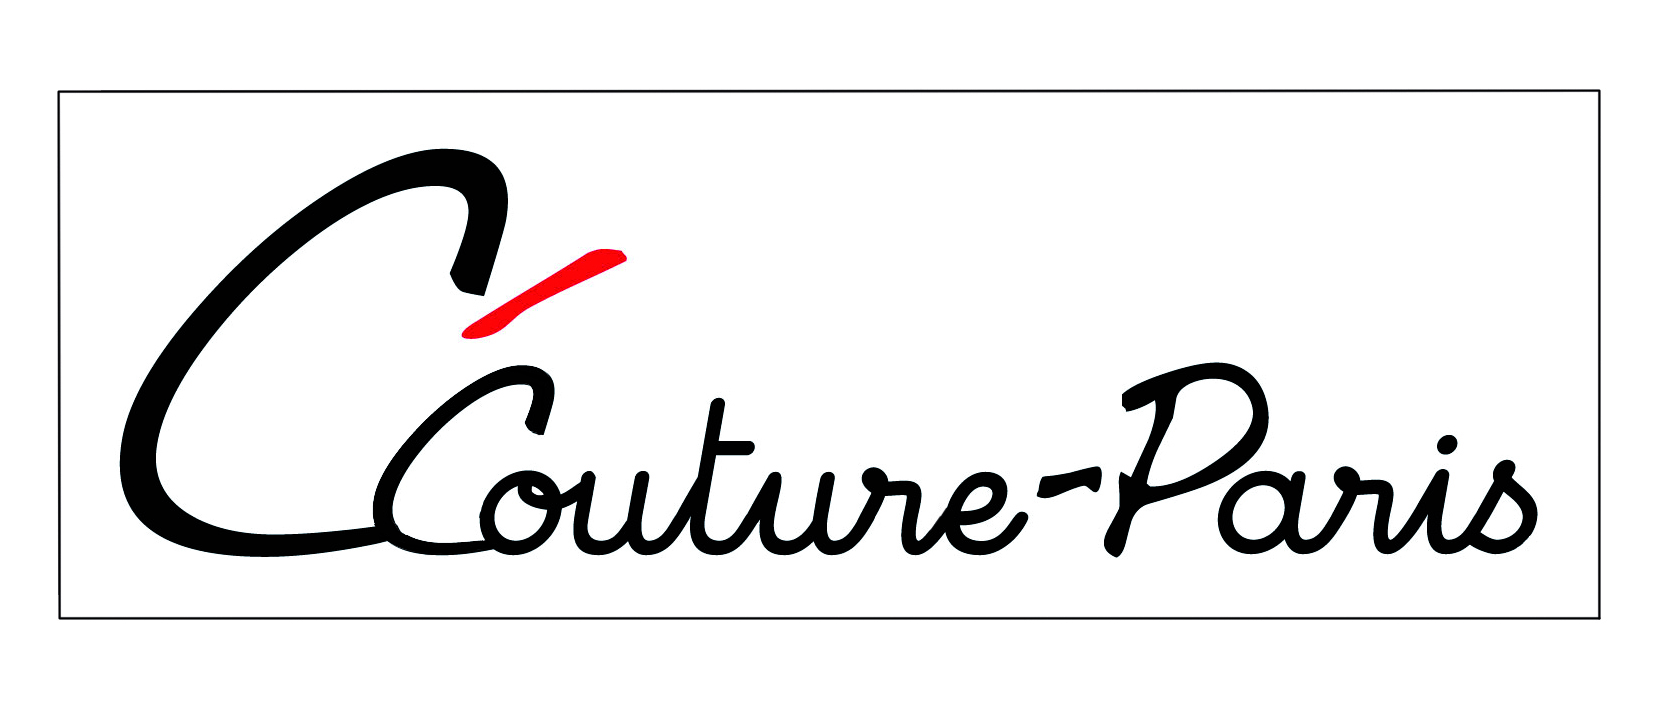 logo CCouture